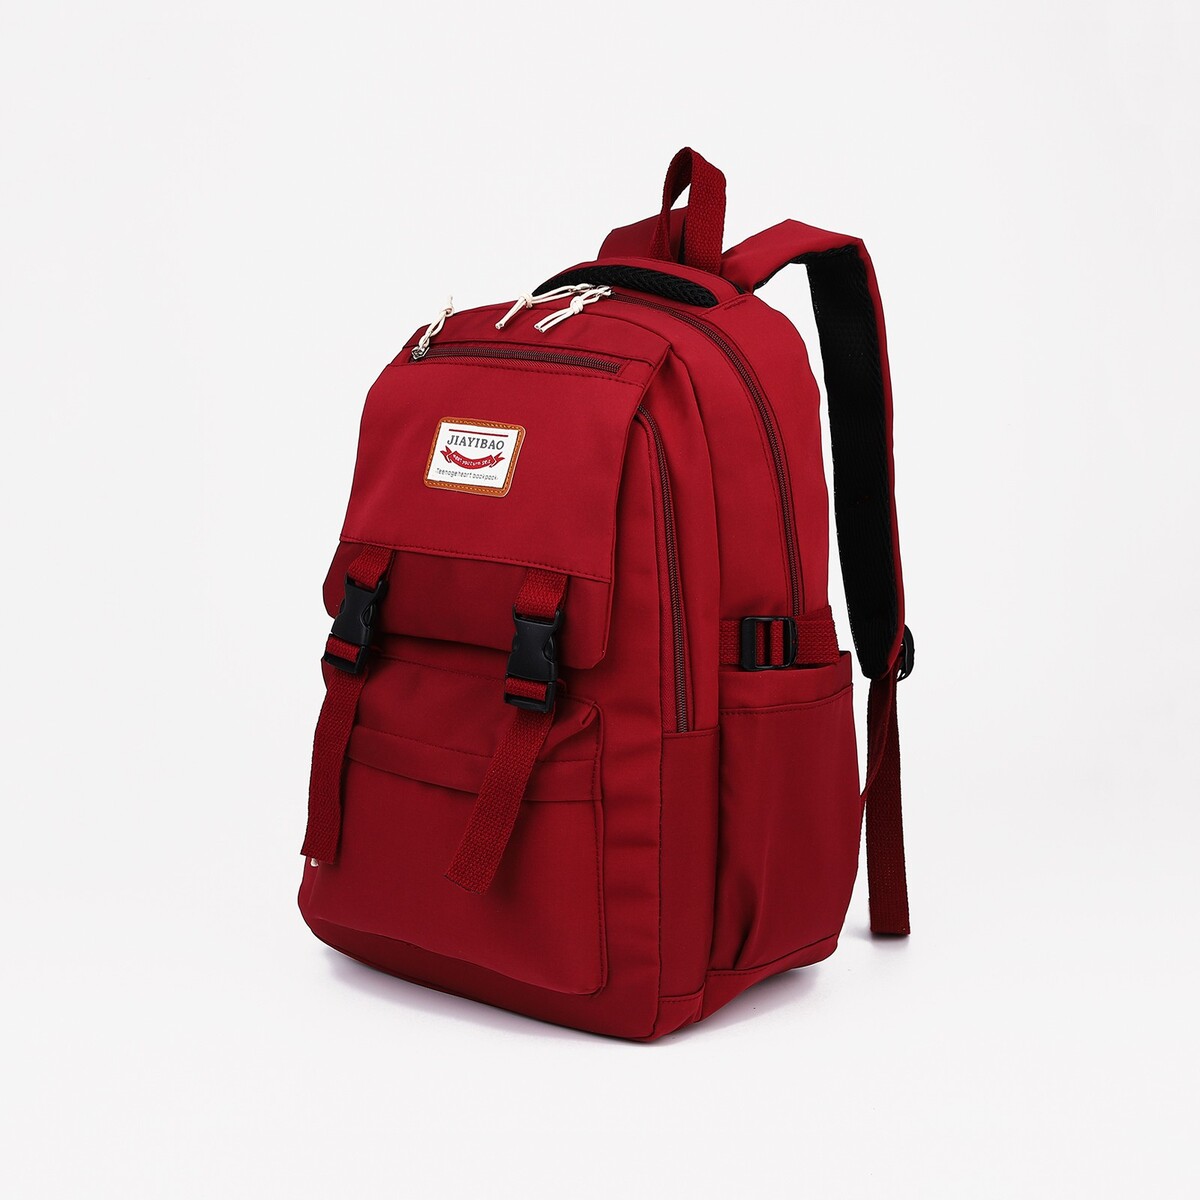 Рюкзак на молнии, 4 наружных кармана, цвет красный рюкзак классики 28 11 38 см 1 отд на молнии 4 н кармана бордовый